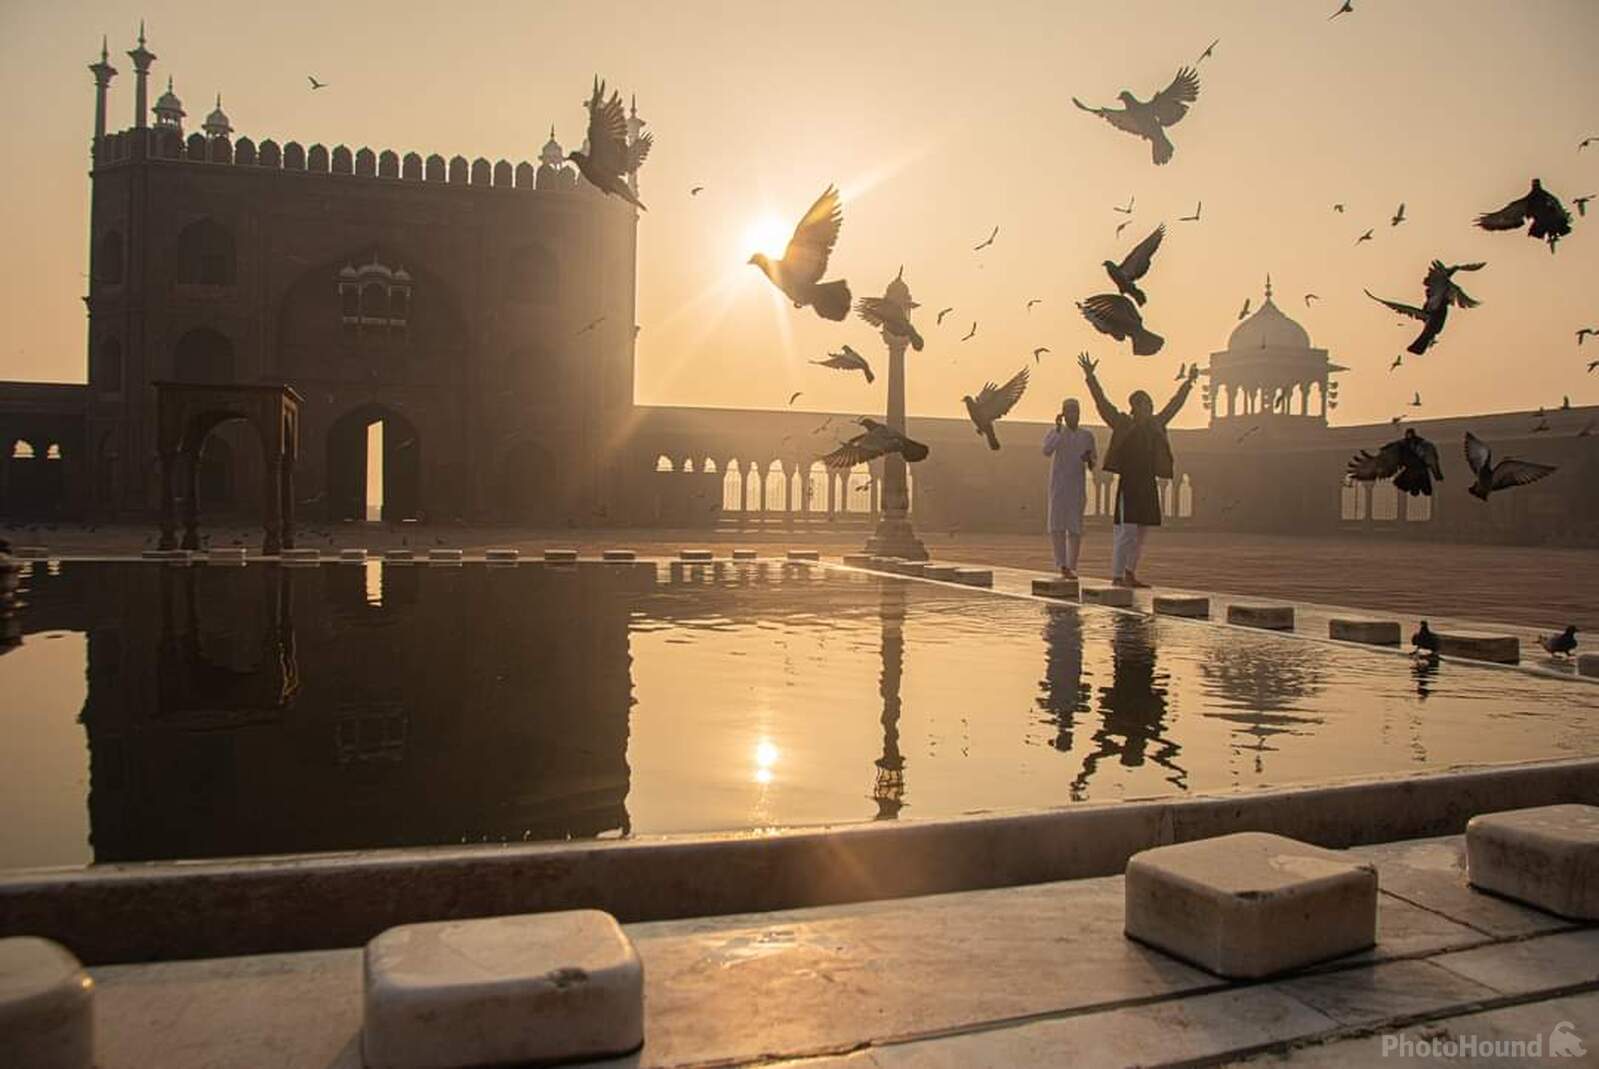 Image of Jama Masjid of Delhi by Anas Qarman